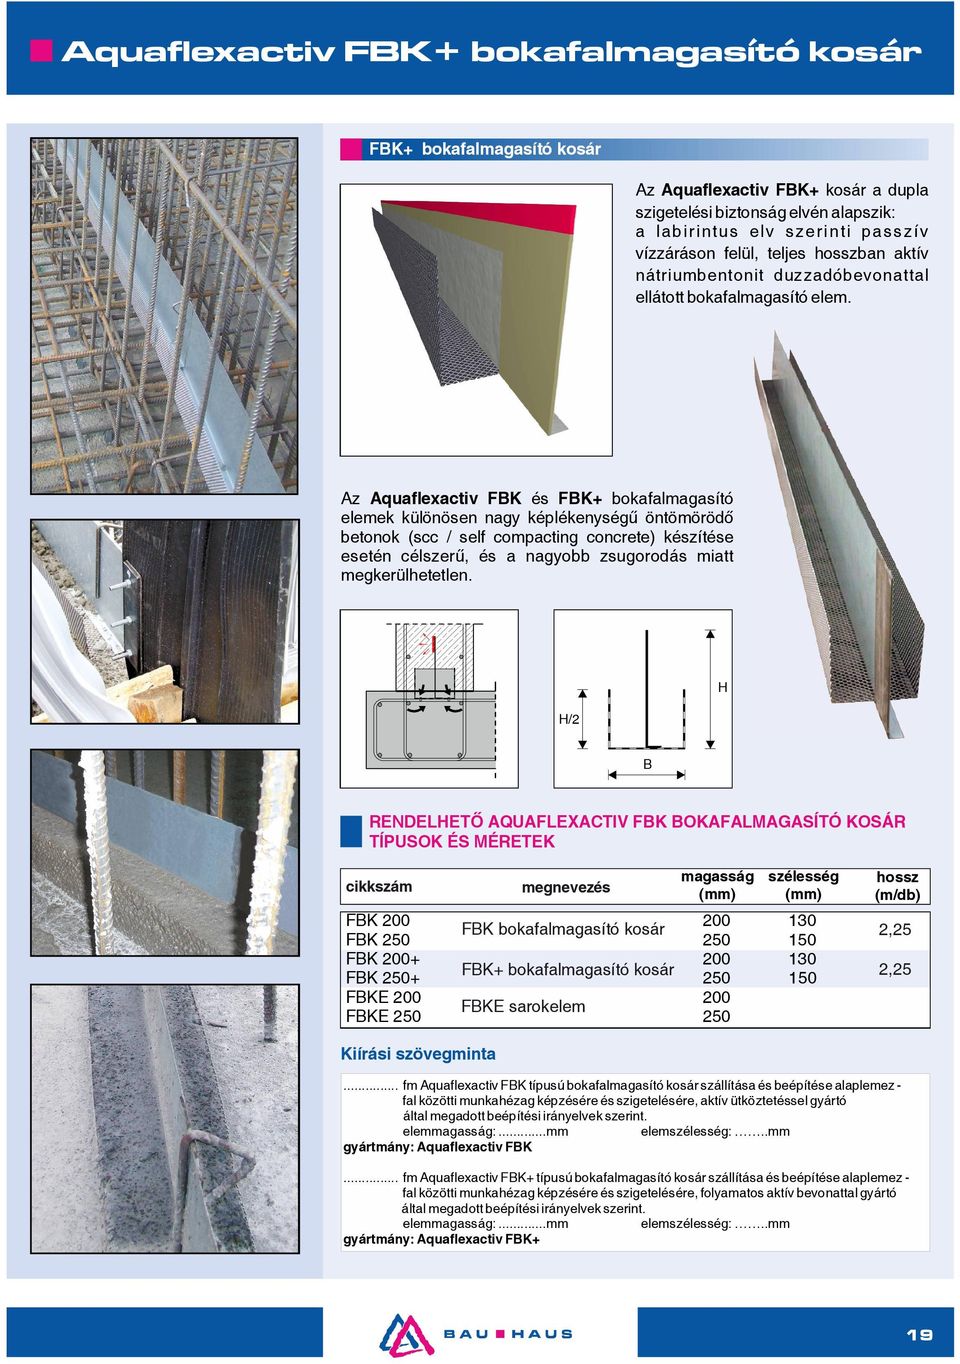 Az Aquaflexactiv FBK és FBK+ bokafalmagasító elemek különösen nagy képlékenységű öntömörödő betonok (scc / self compacting concrete) készítése esetén célszerű, és a nagyobb zsugorodás miatt